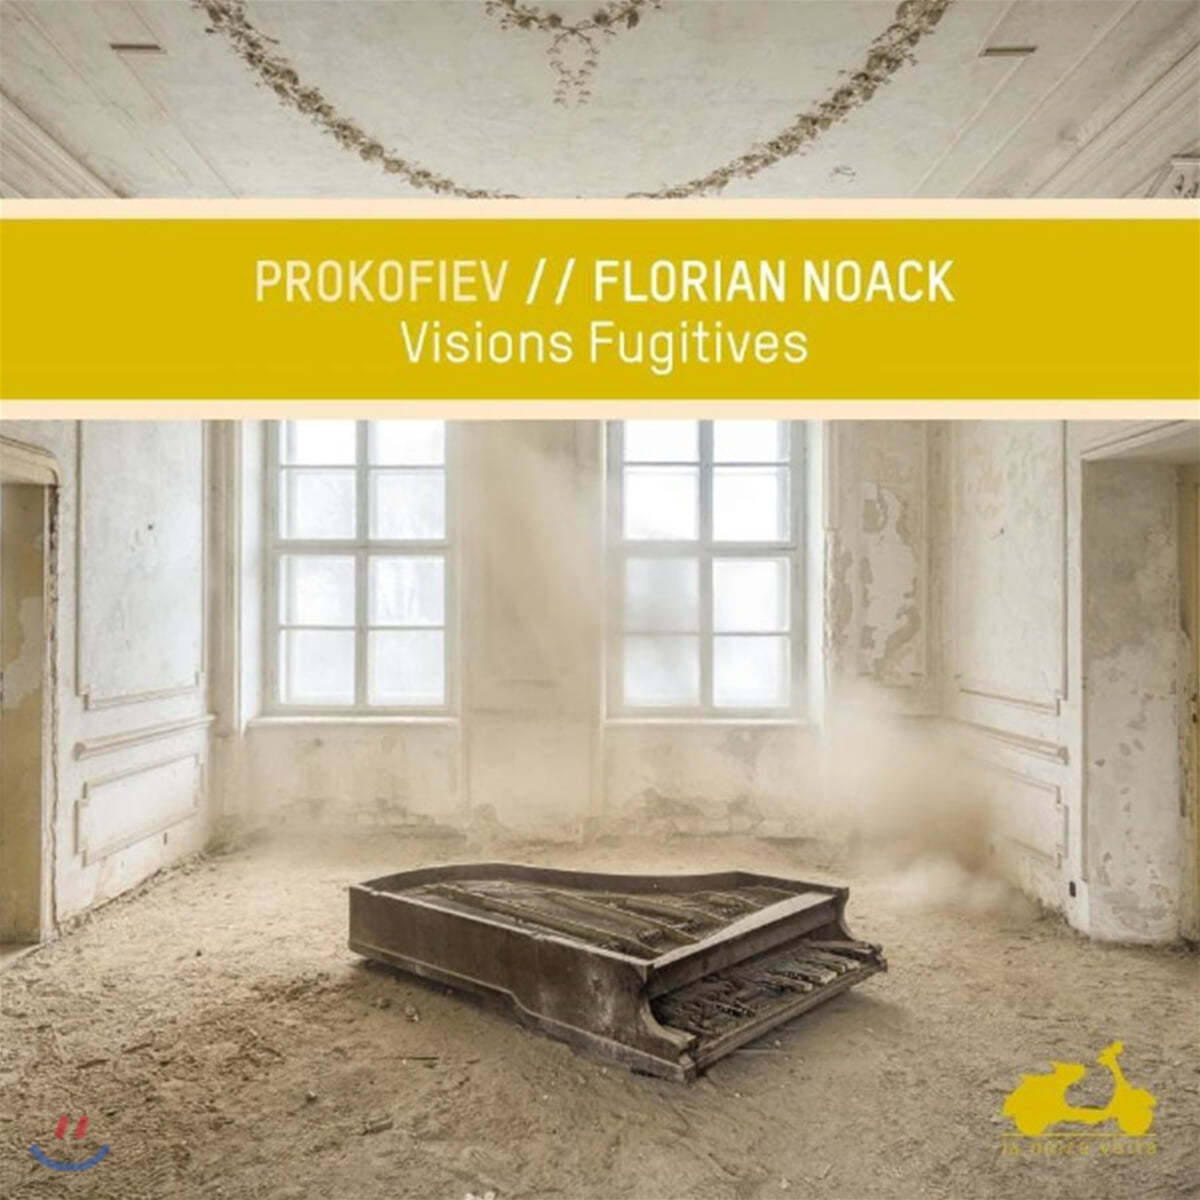 Florian Noack 프로코피에프: 할머니의 이야기, 피아노를 위한 4개의 연습곡, 찰나의 환영, 피아노 소나타 6번 